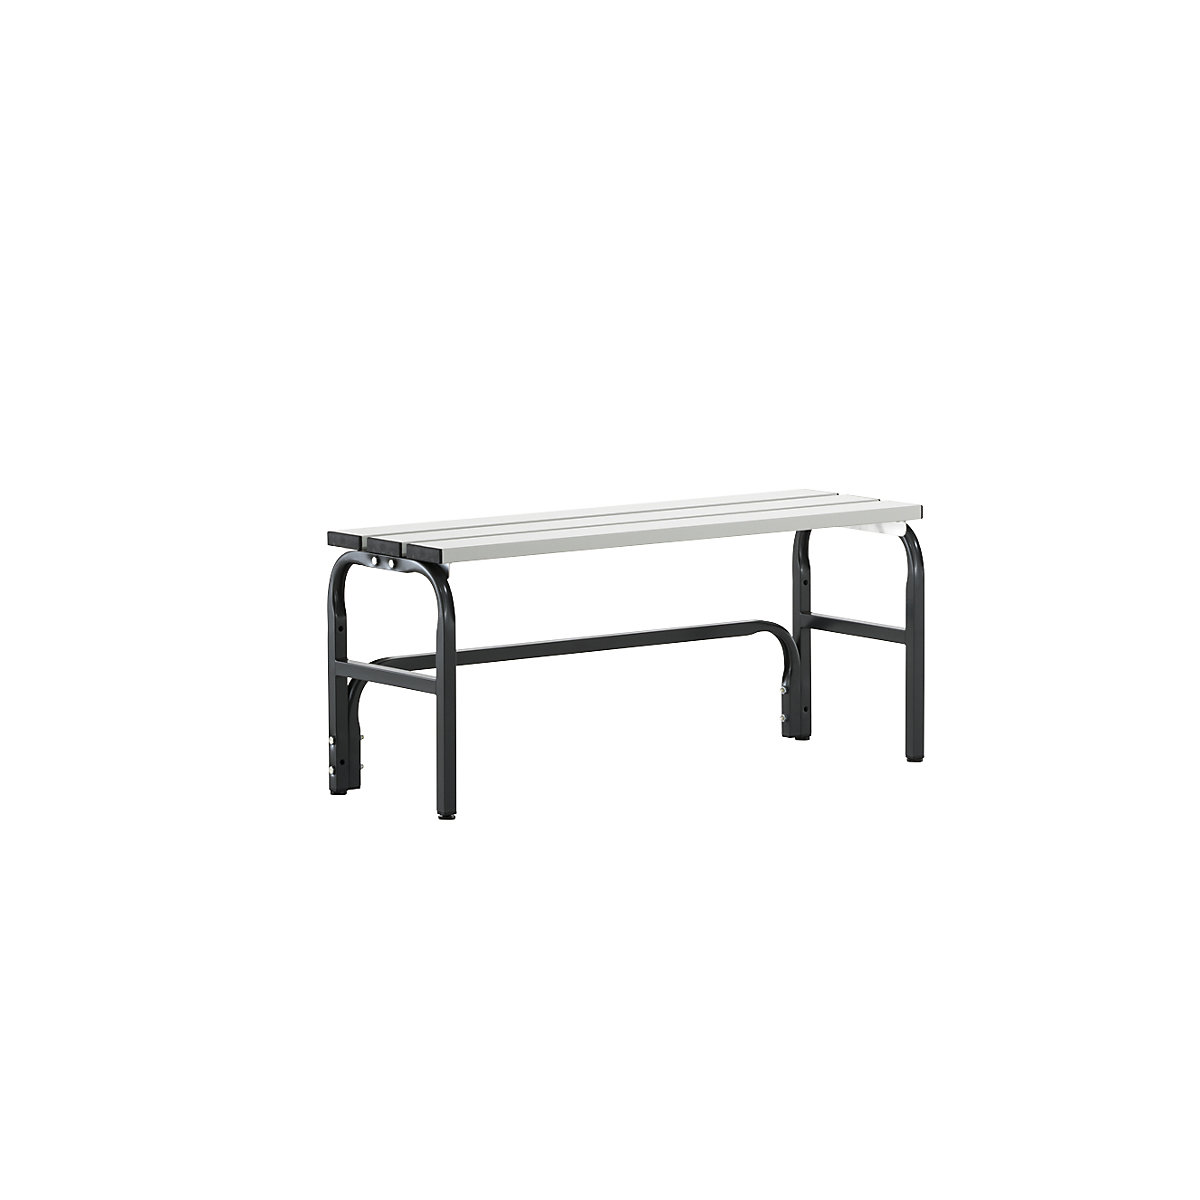 Sypro – Šatňová lavica s hliníkovými lištami, v x h 450 x 350 mm, dĺžka 1015 mm, antracitová